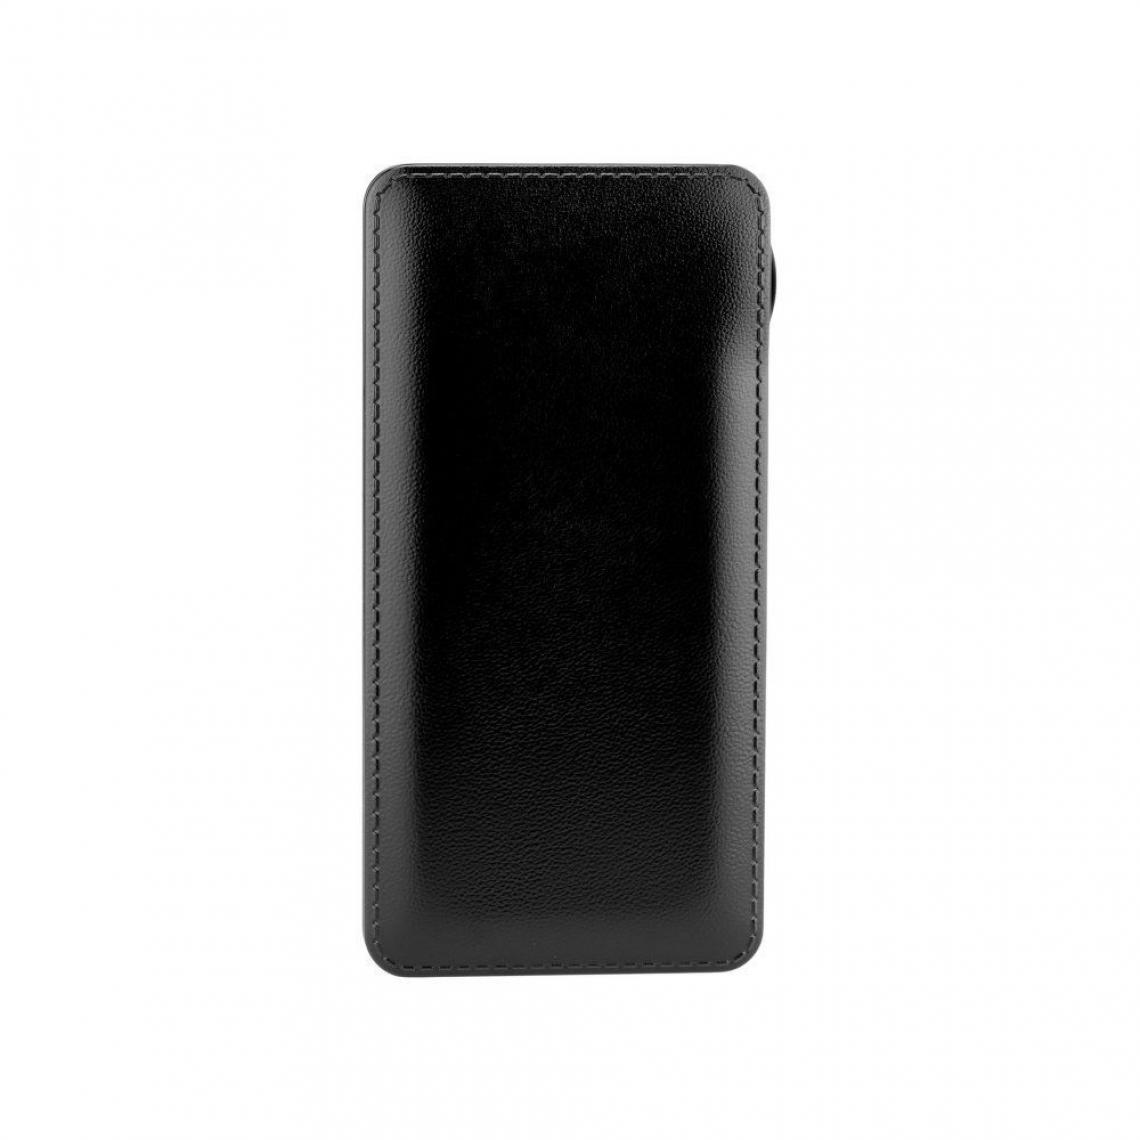 Ozzzo - Chargeur batterie externe 30000 mAh powerbank ozzzo noir pour Samsung Galaxy Tab 4 8.0" - Autres accessoires smartphone